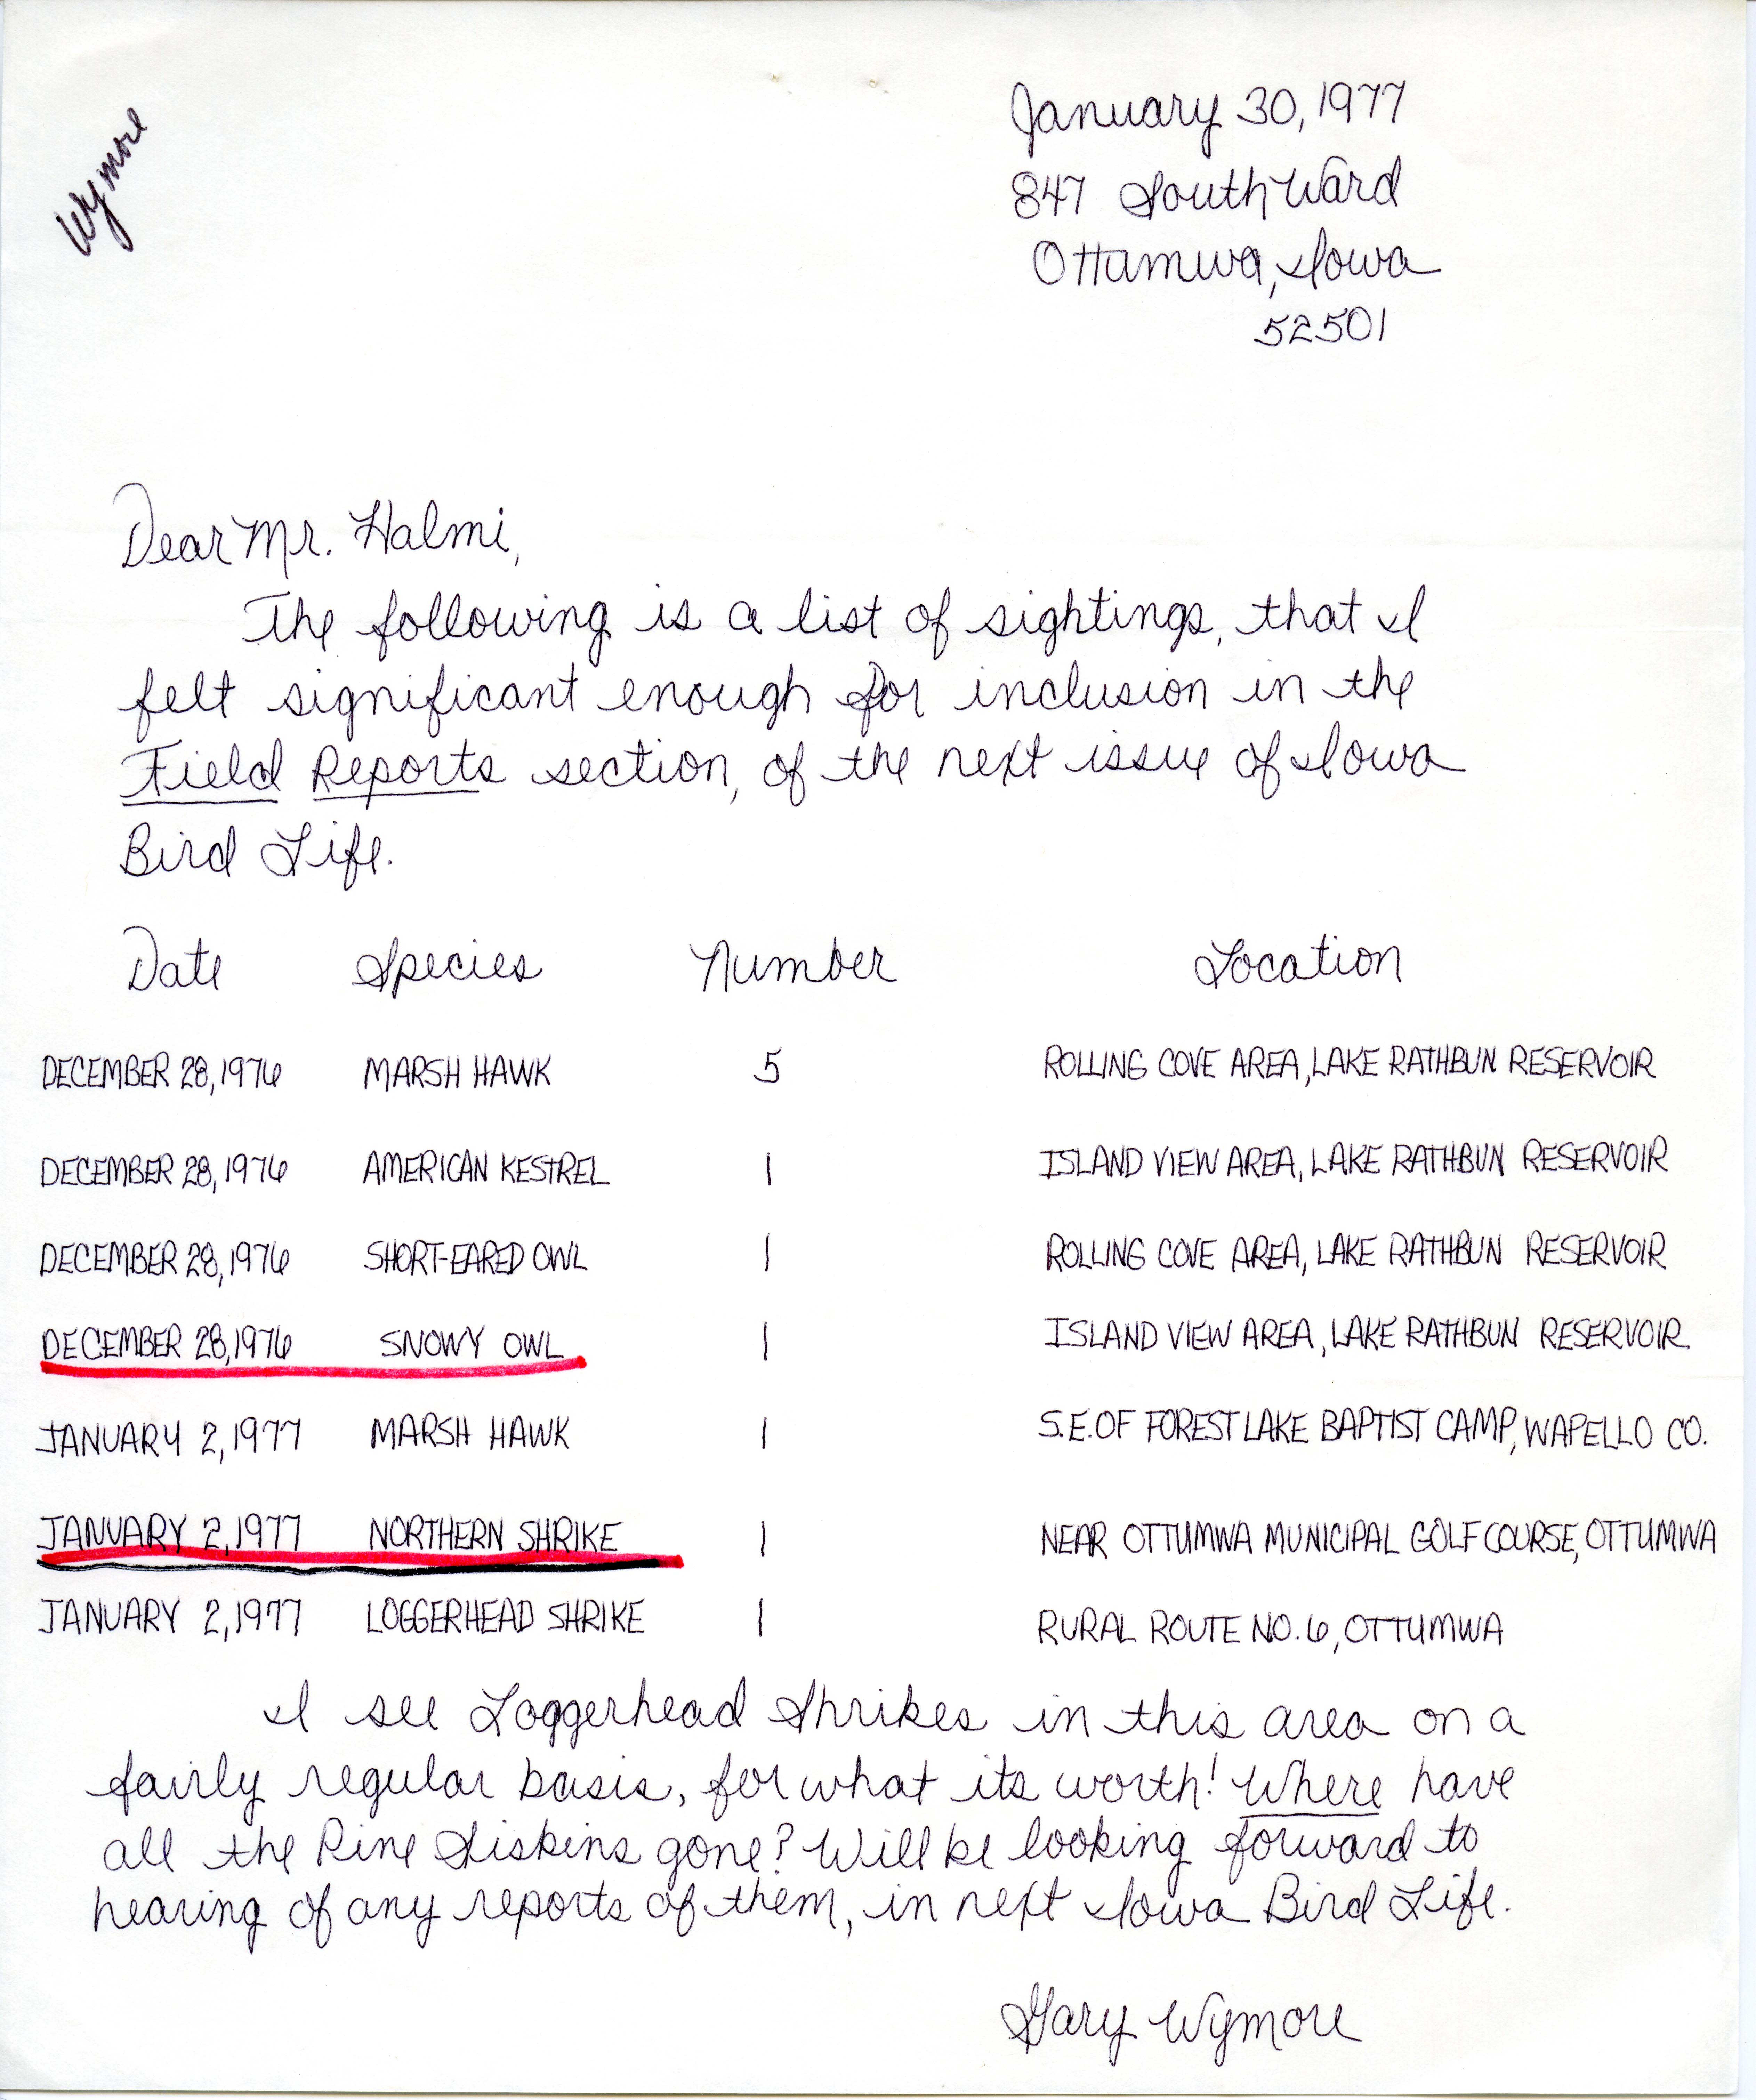 Gary D. Wymore letter to Nicholas S. Halmi regarding bird sightings, January 30, 1977